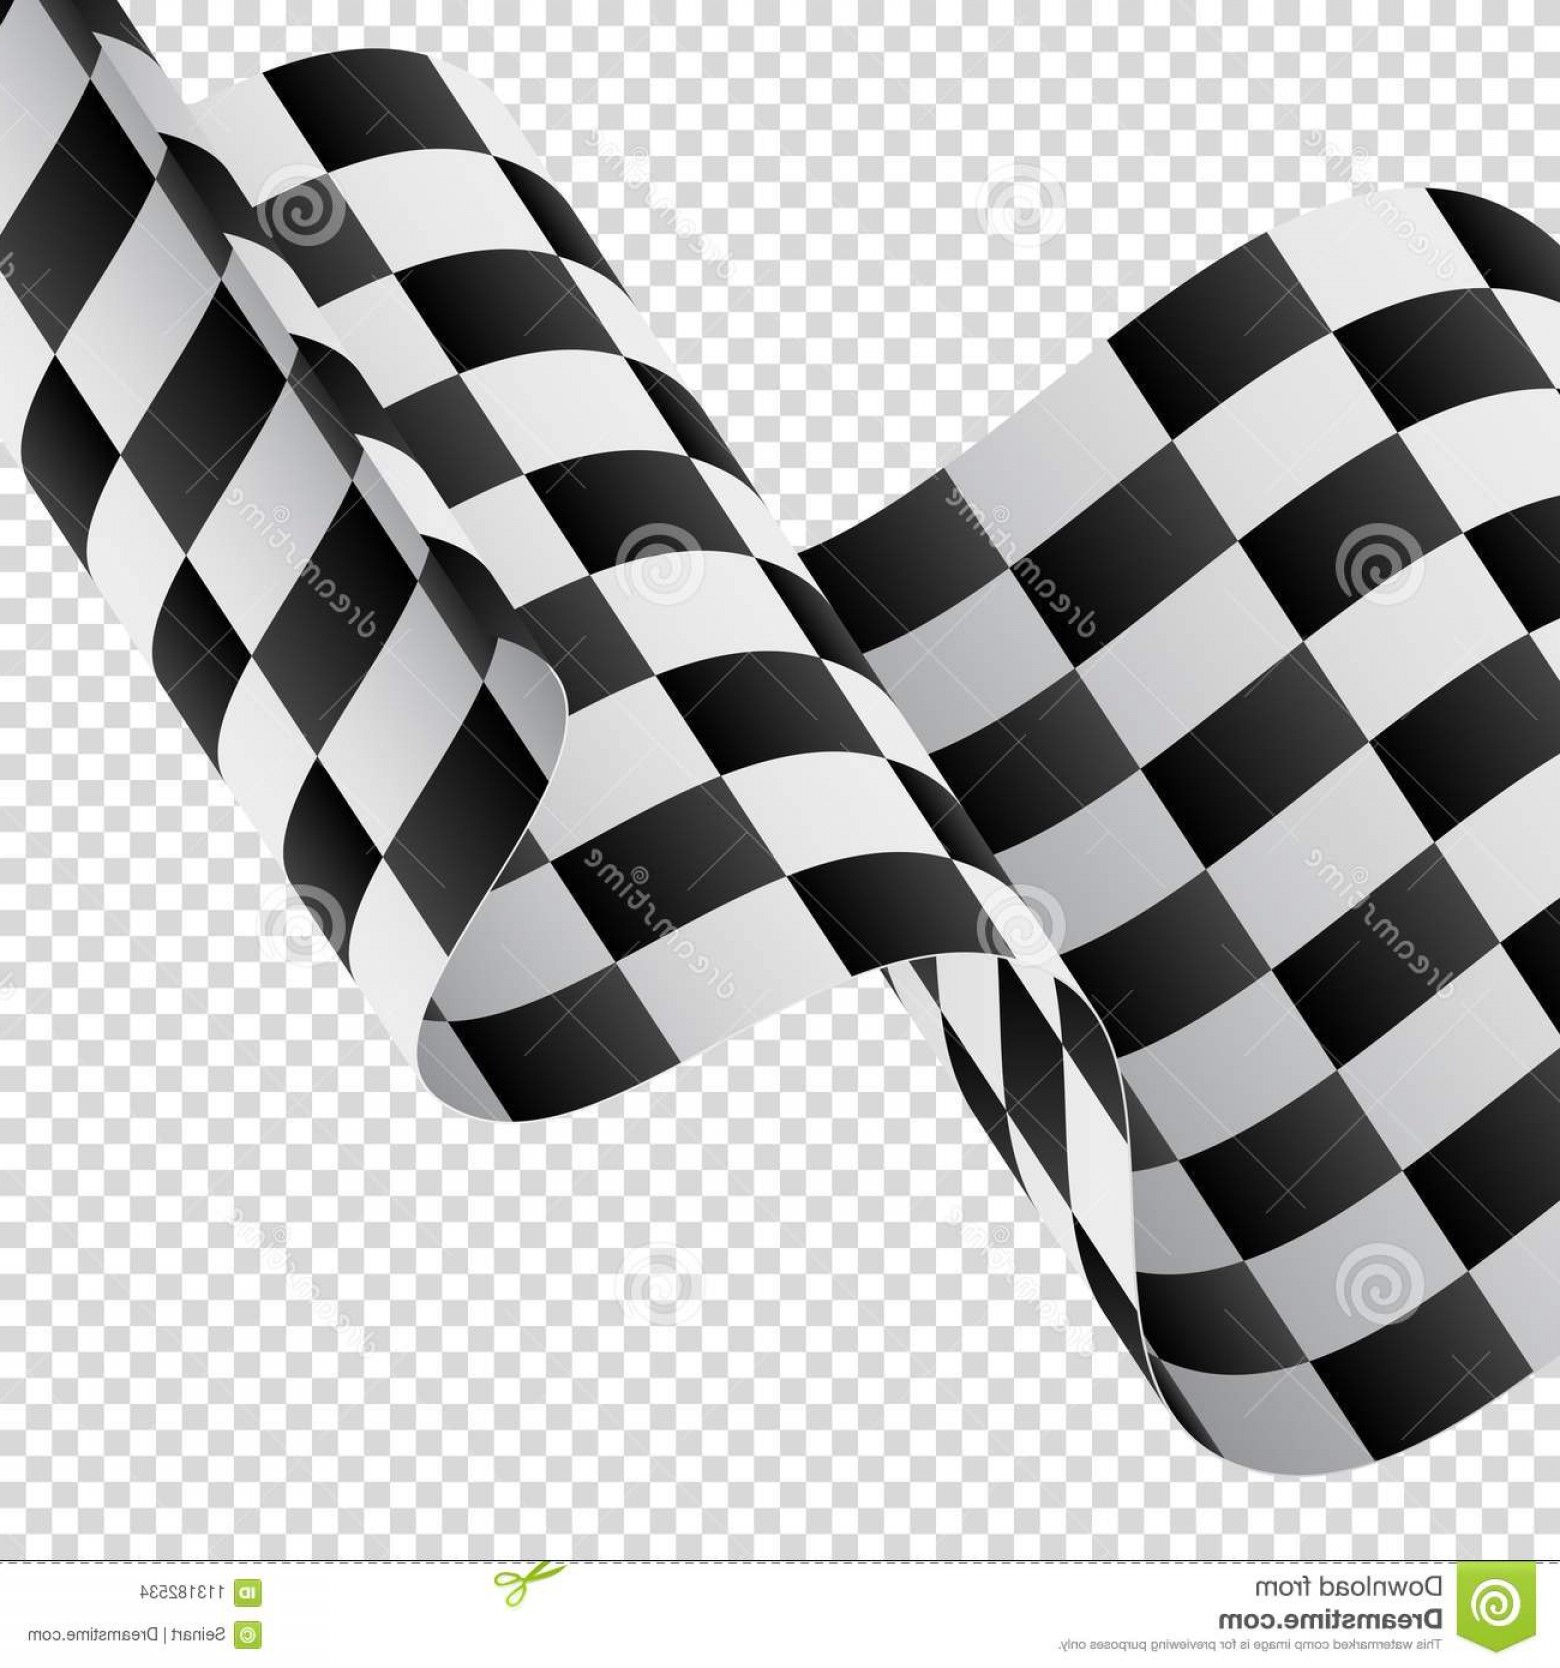 Checkered Flag Outline